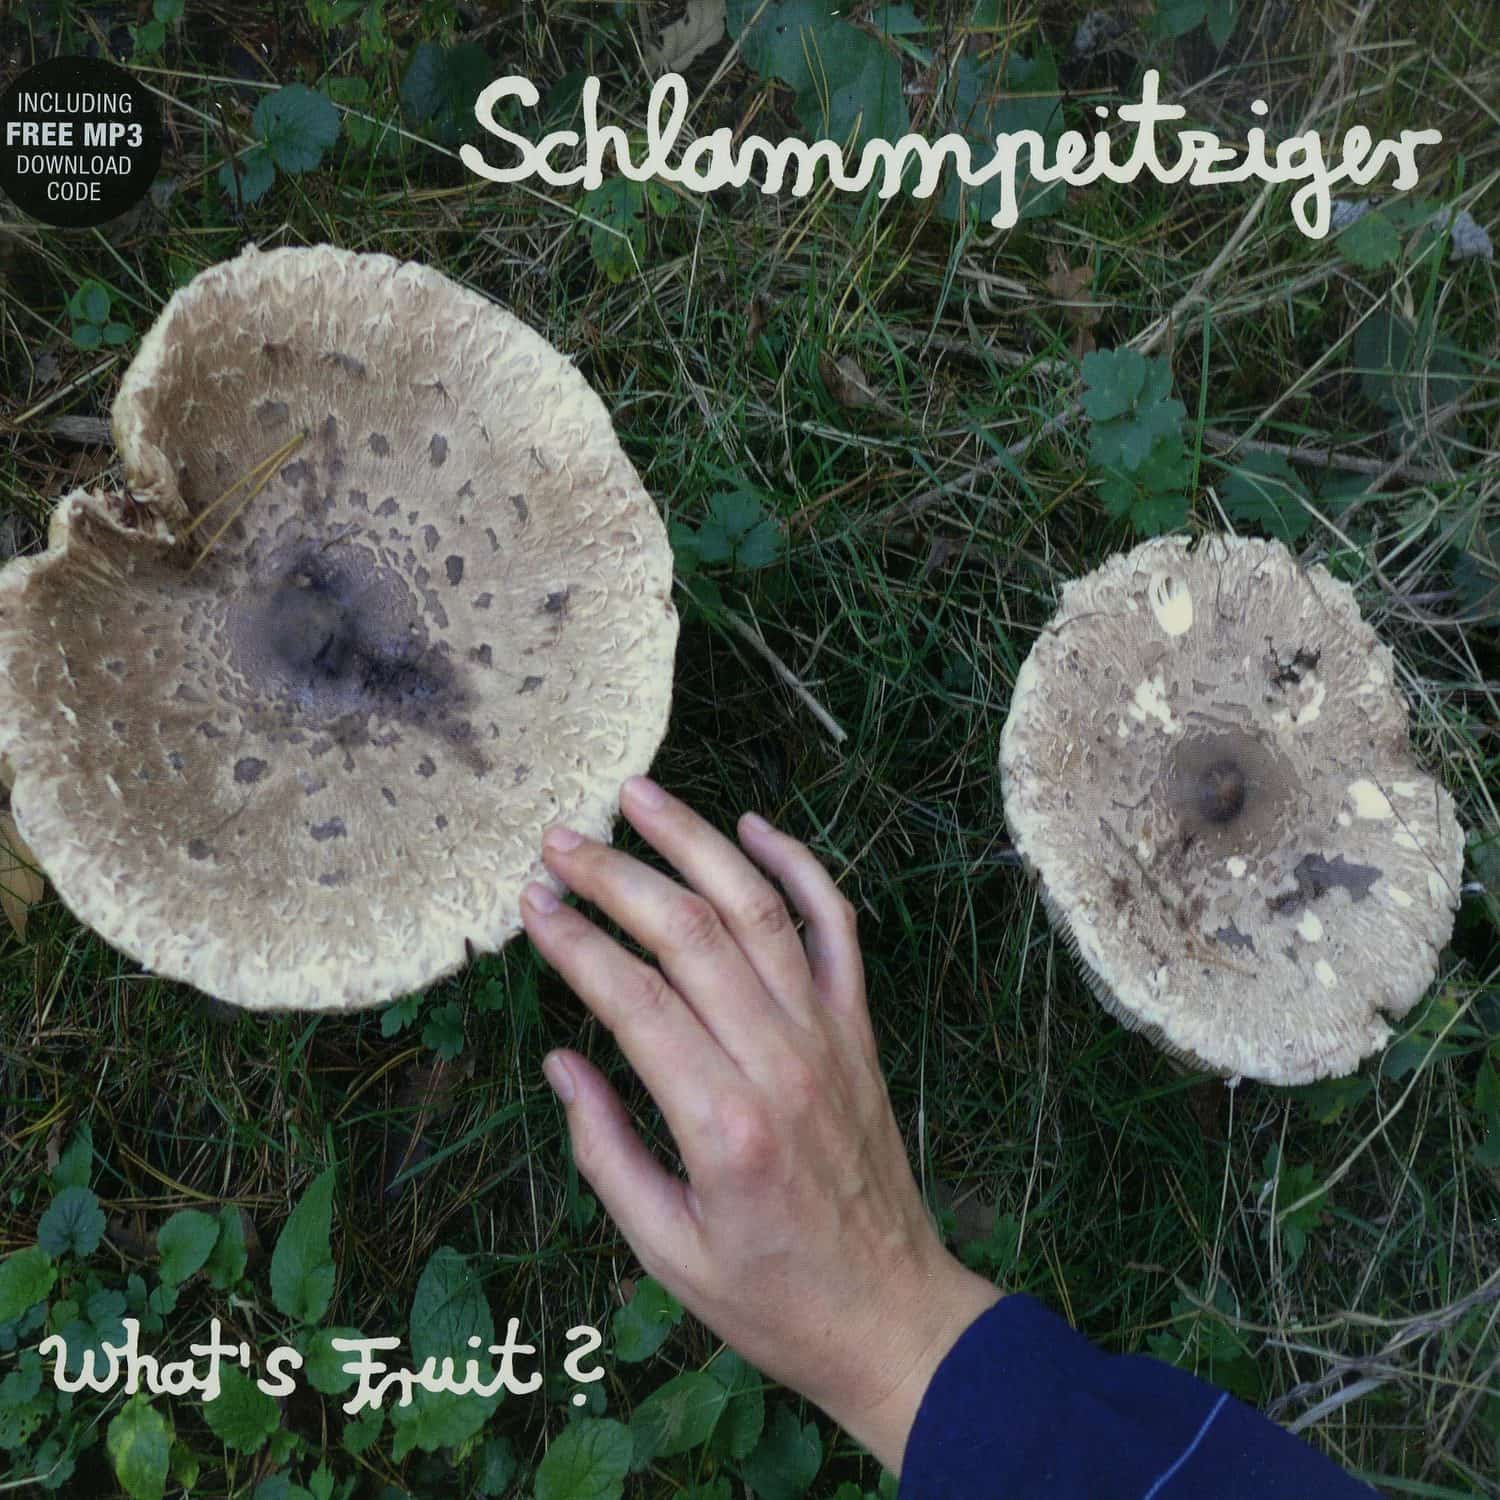 Schlammpeitziger - WHATS FRUIT 